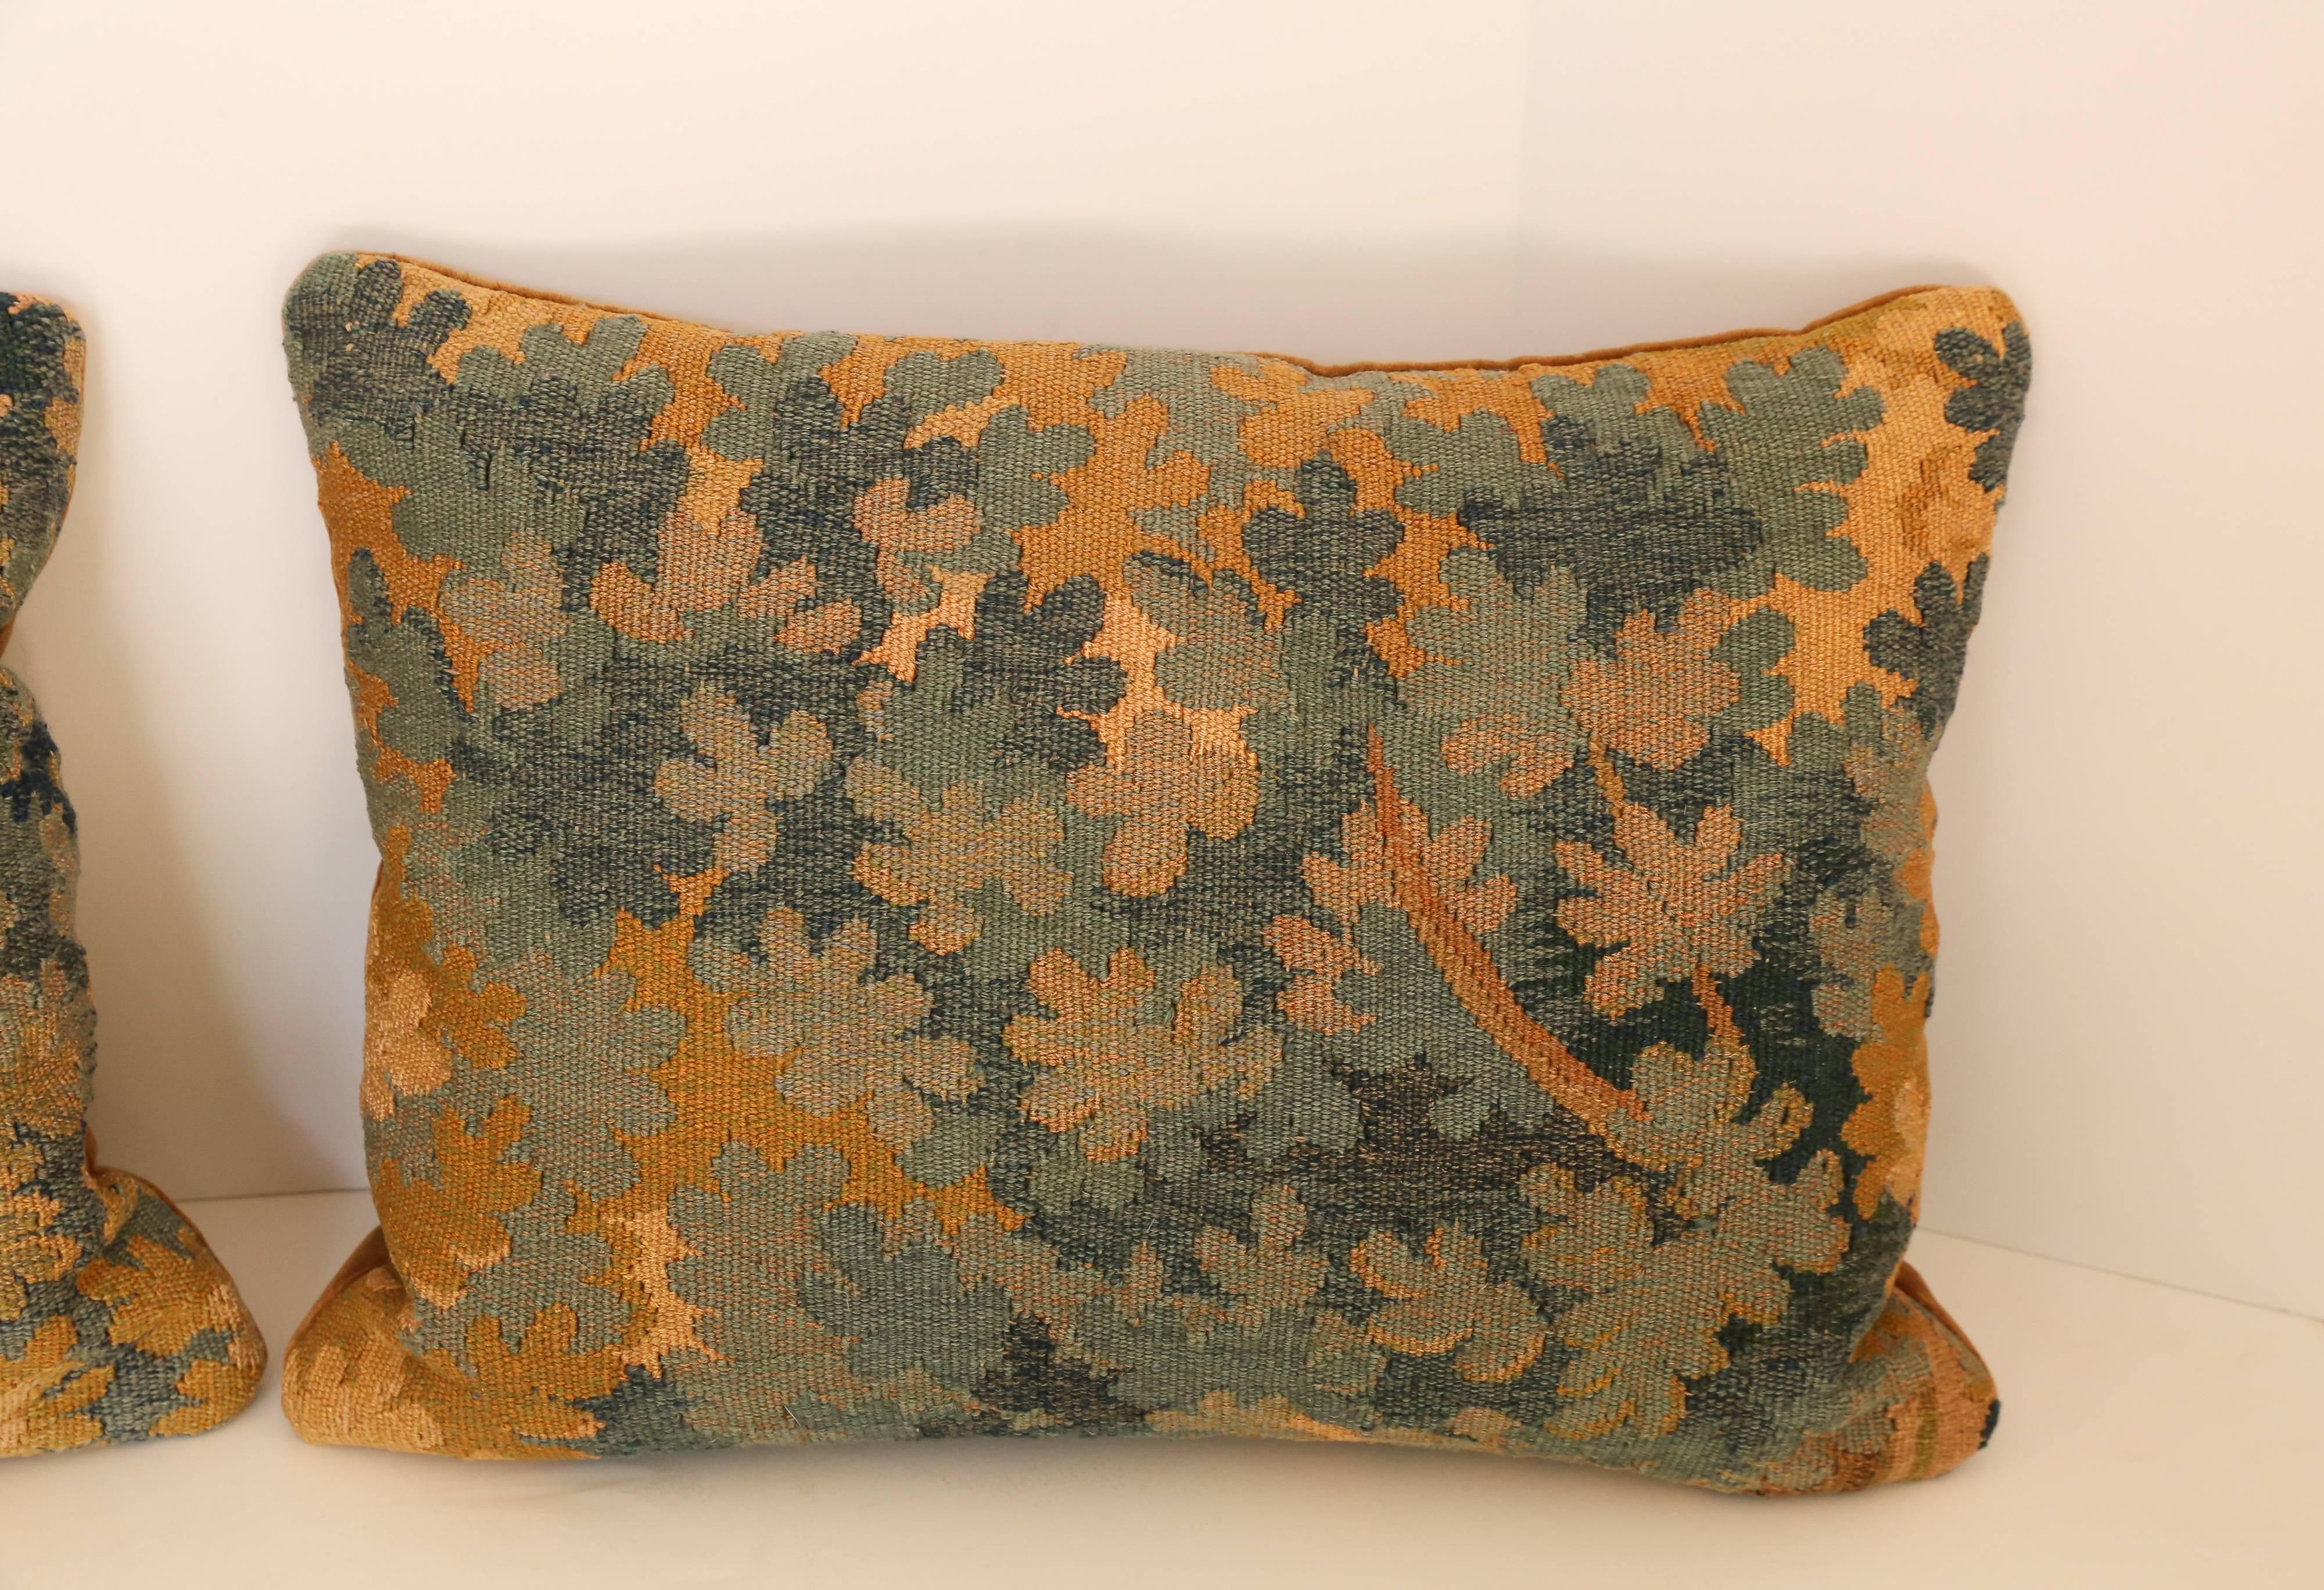 Pair of 18th century Aubusson pillows backed in velvet.